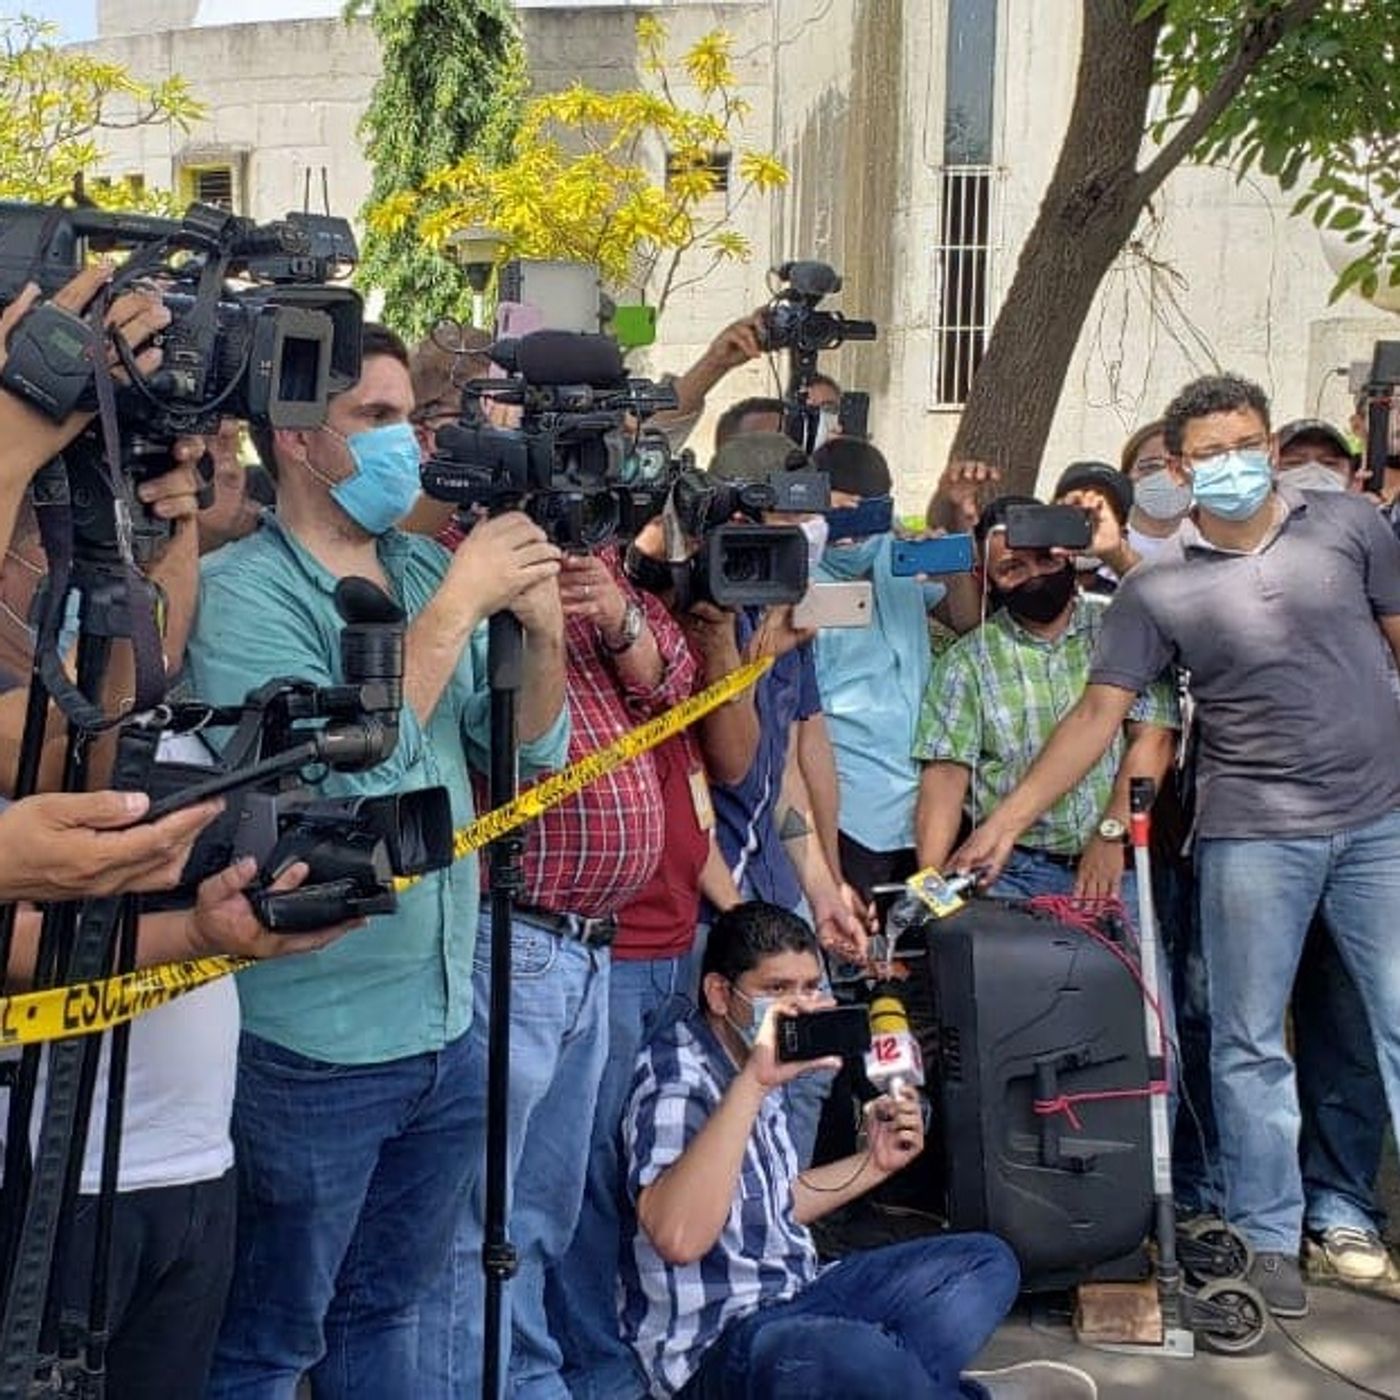 ENTREVISTA | Abigail Hernández: “La prensa independiente está defendiendo los derechos ciudadanos“